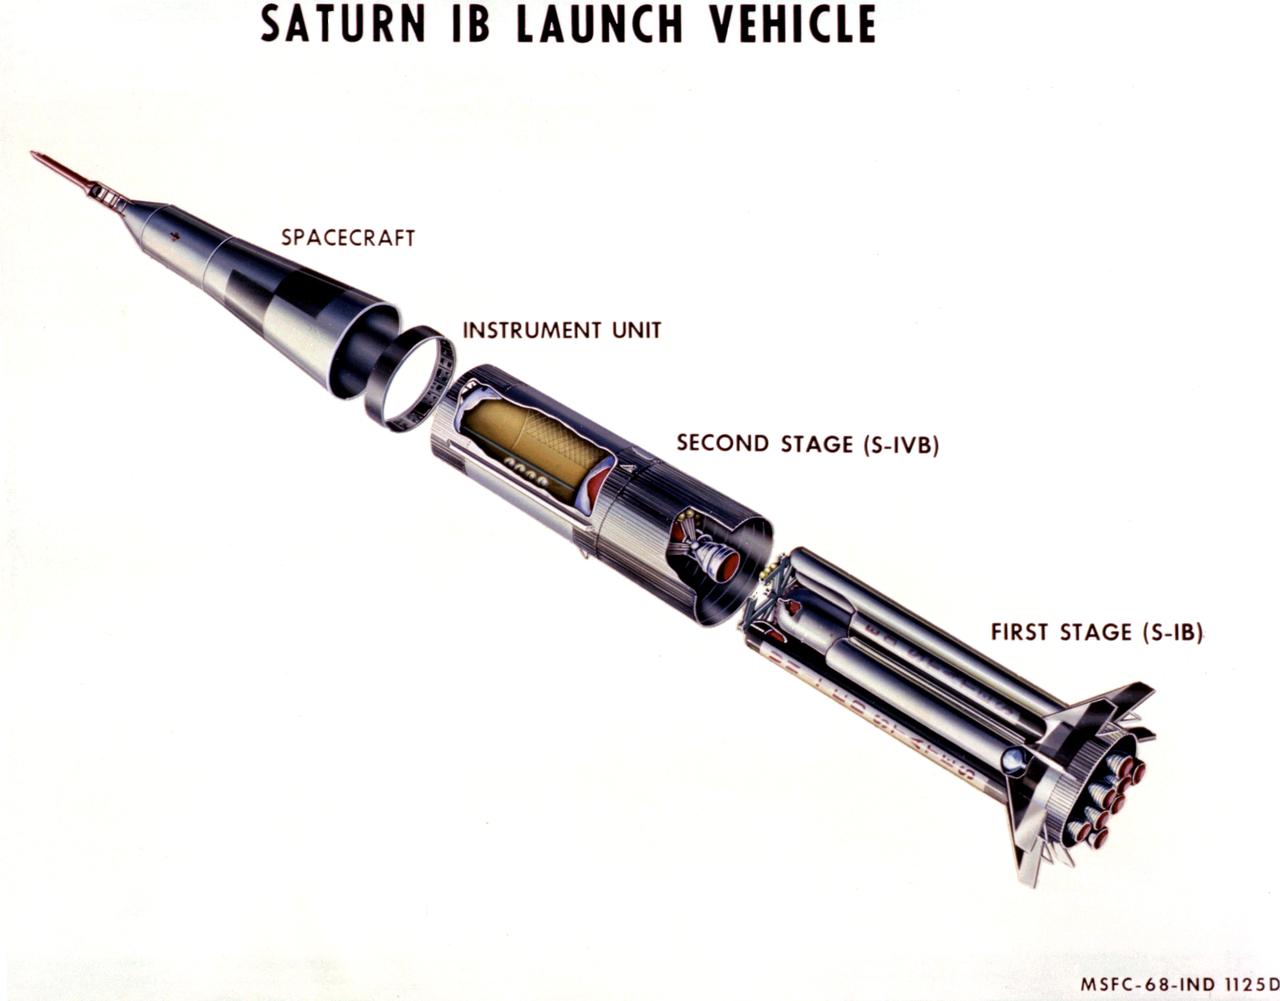 Desenho técnico de corte do foguete Saturn IB, feito em 1968.